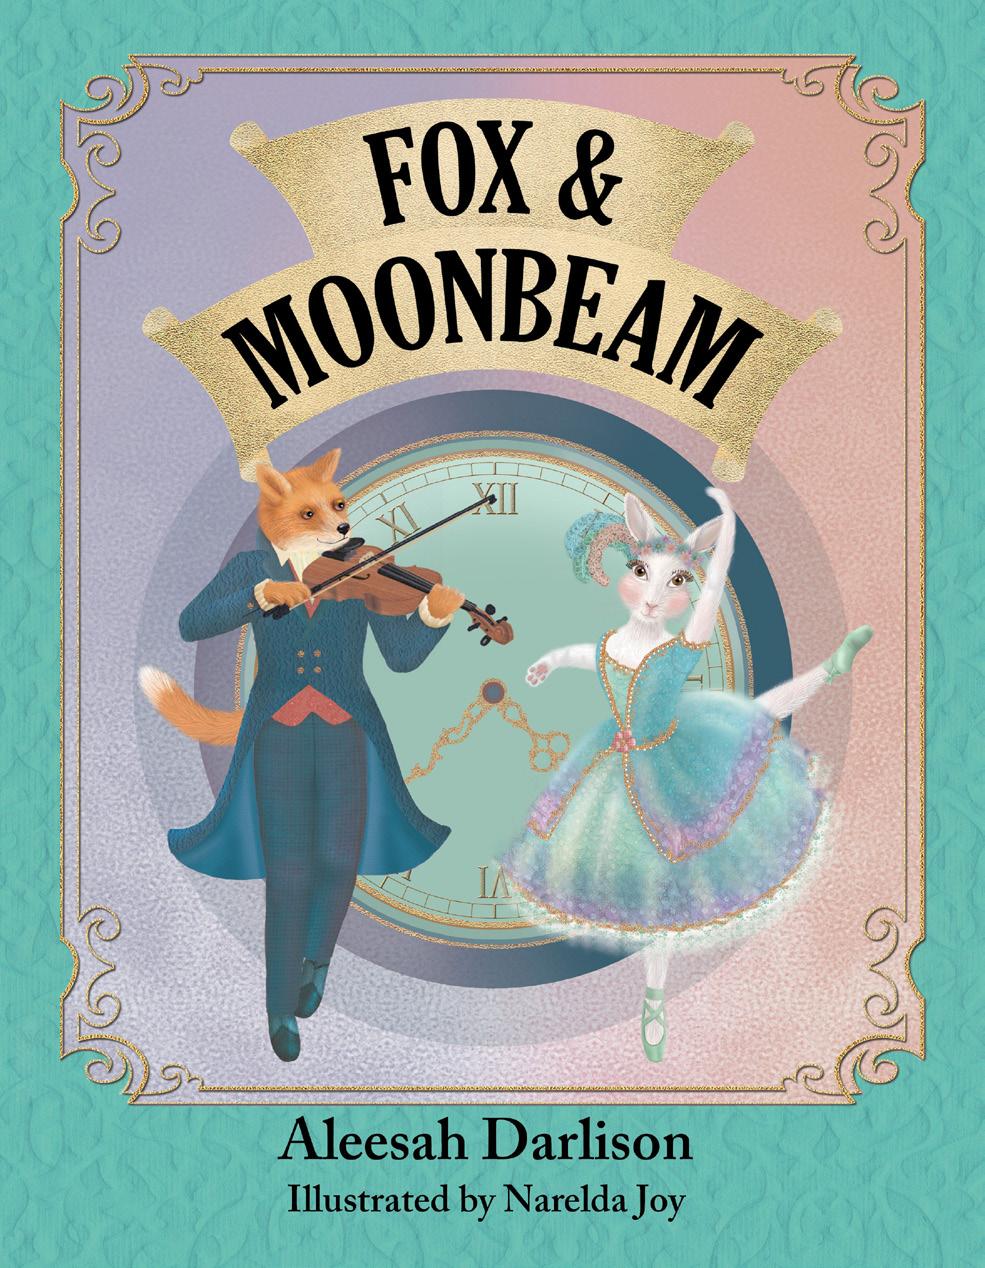 Teachers Notes Fox & Moonbeam Aleesah Darlison / Narelda Joy ISBN: 978-1925563009 Recommended retail: $24.